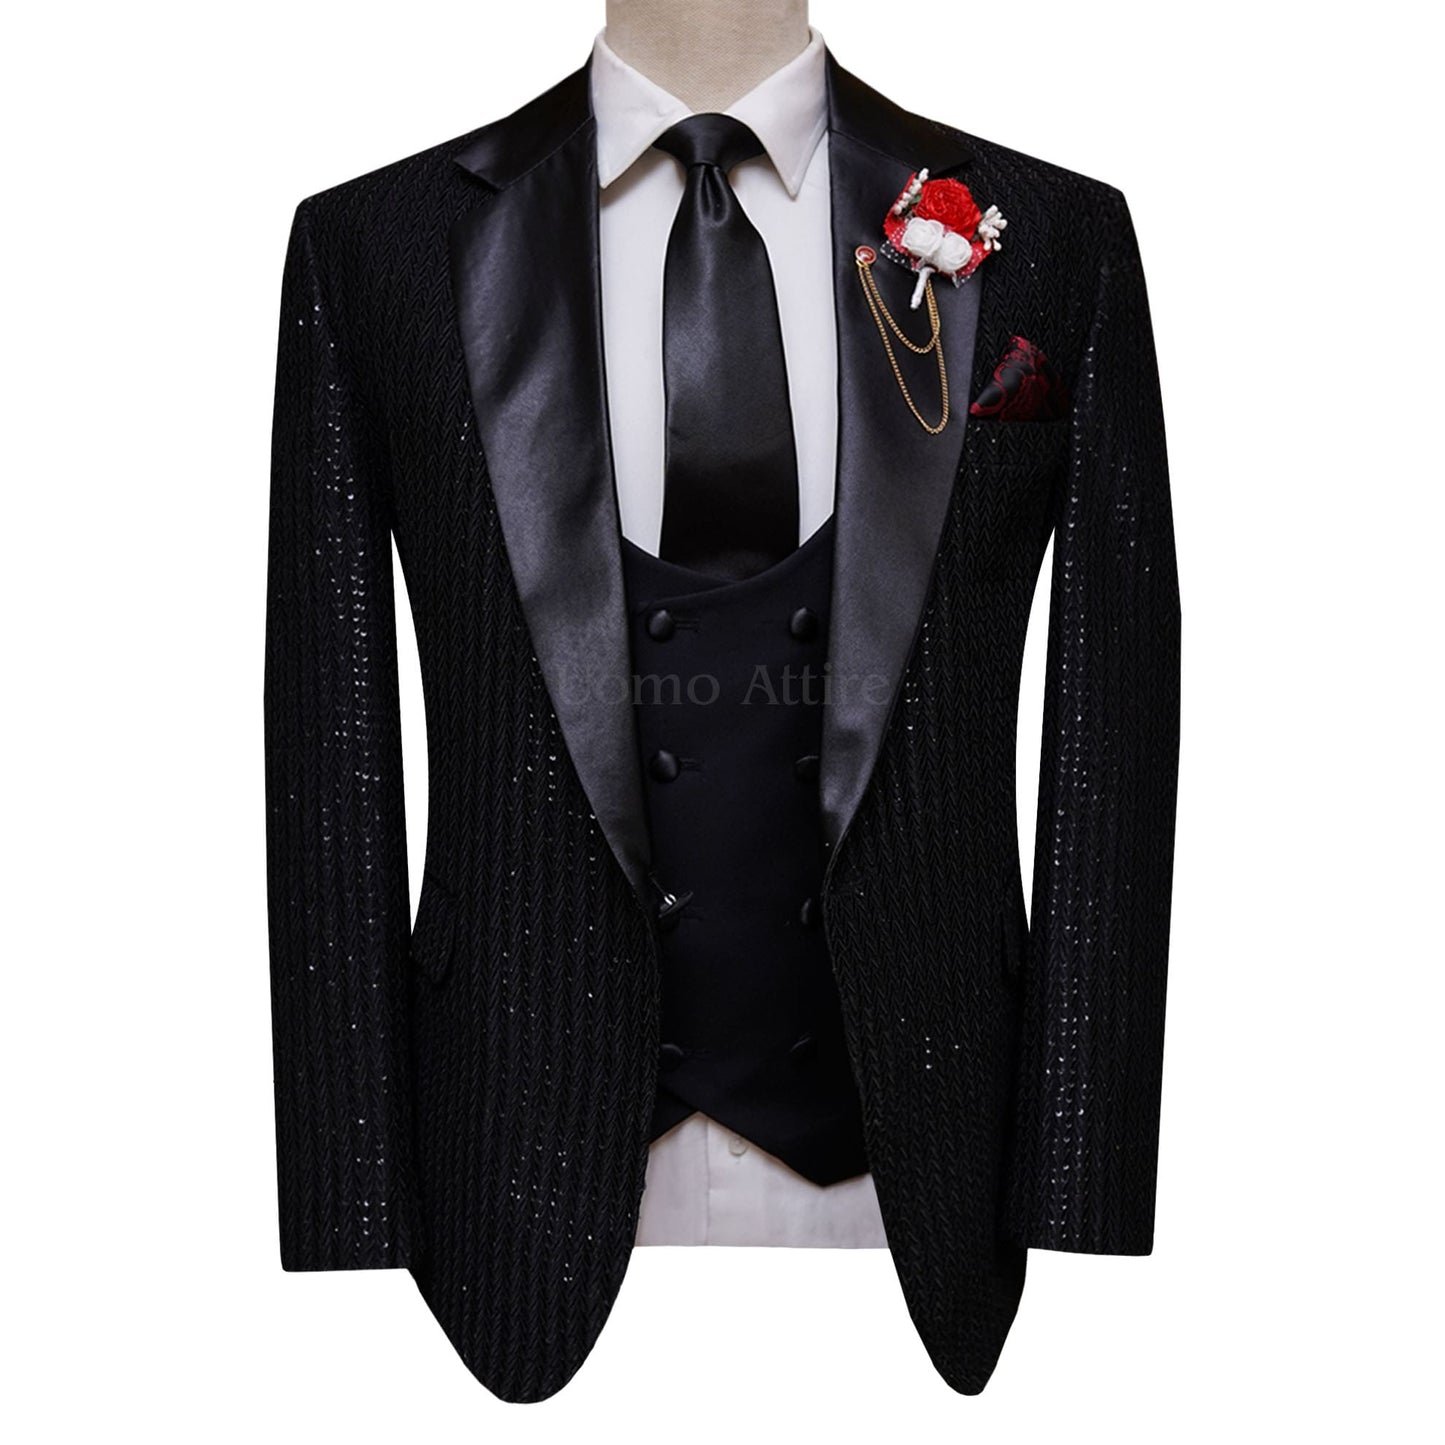 Black contrast three piece suit for wedding – Uomo Attire